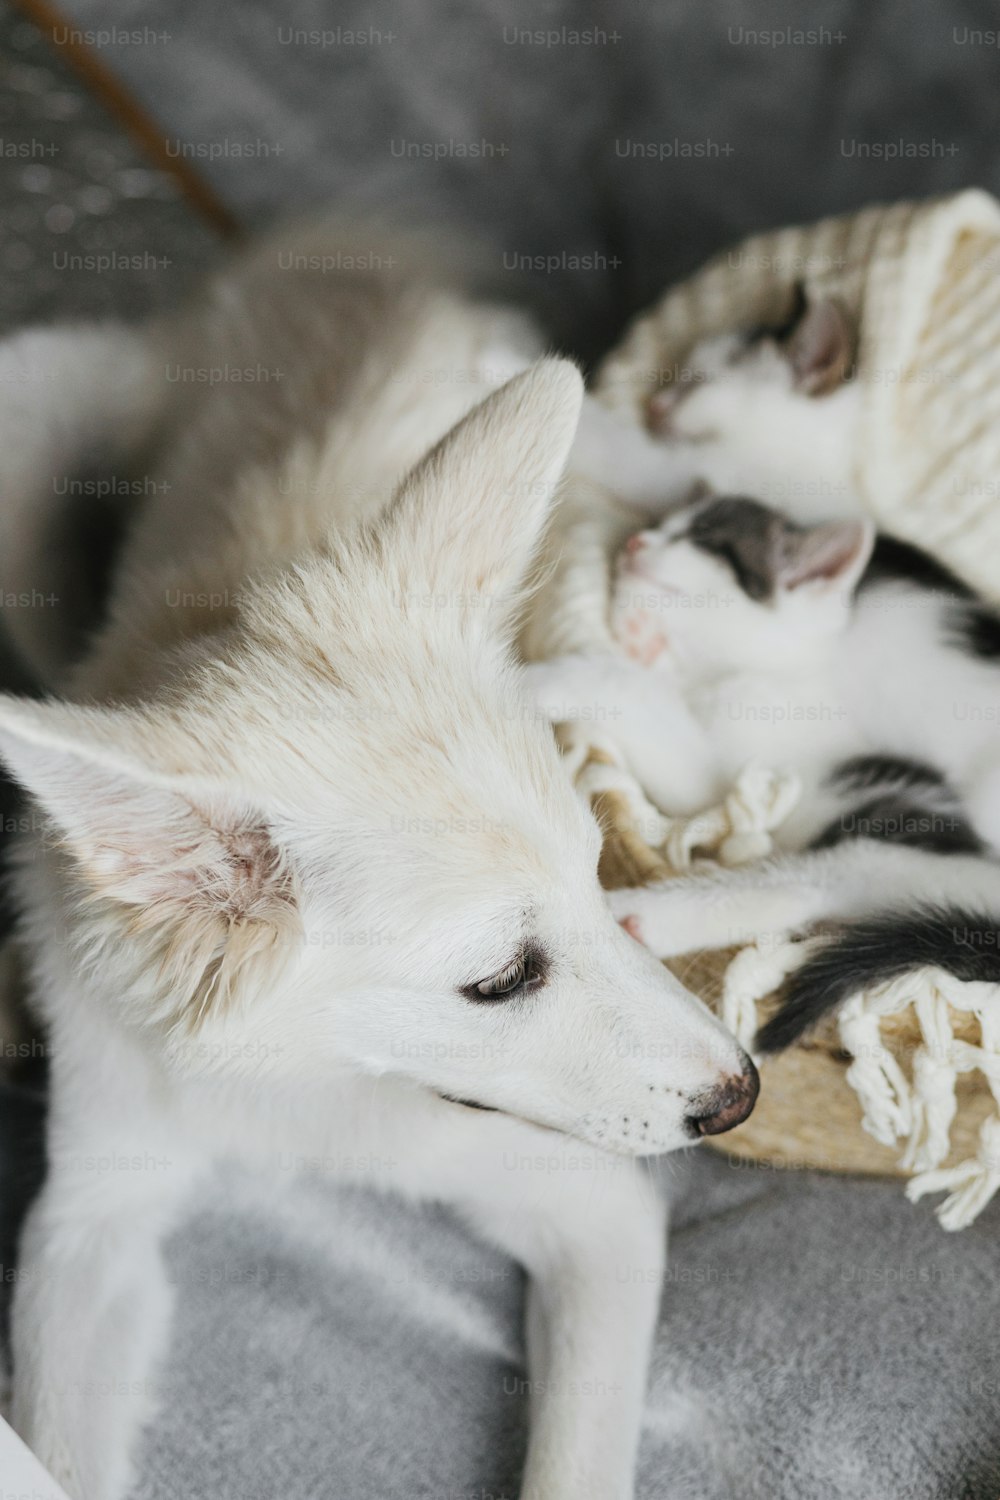 かわいい小さな子猫がバスケットの柔らかい毛布の上で眠っているのを見ている愛らしい白い子犬。部屋のバスケットで昼寝をしている2匹の灰色と白の子猫を保護する甘い犬の友達。導入コンセプト